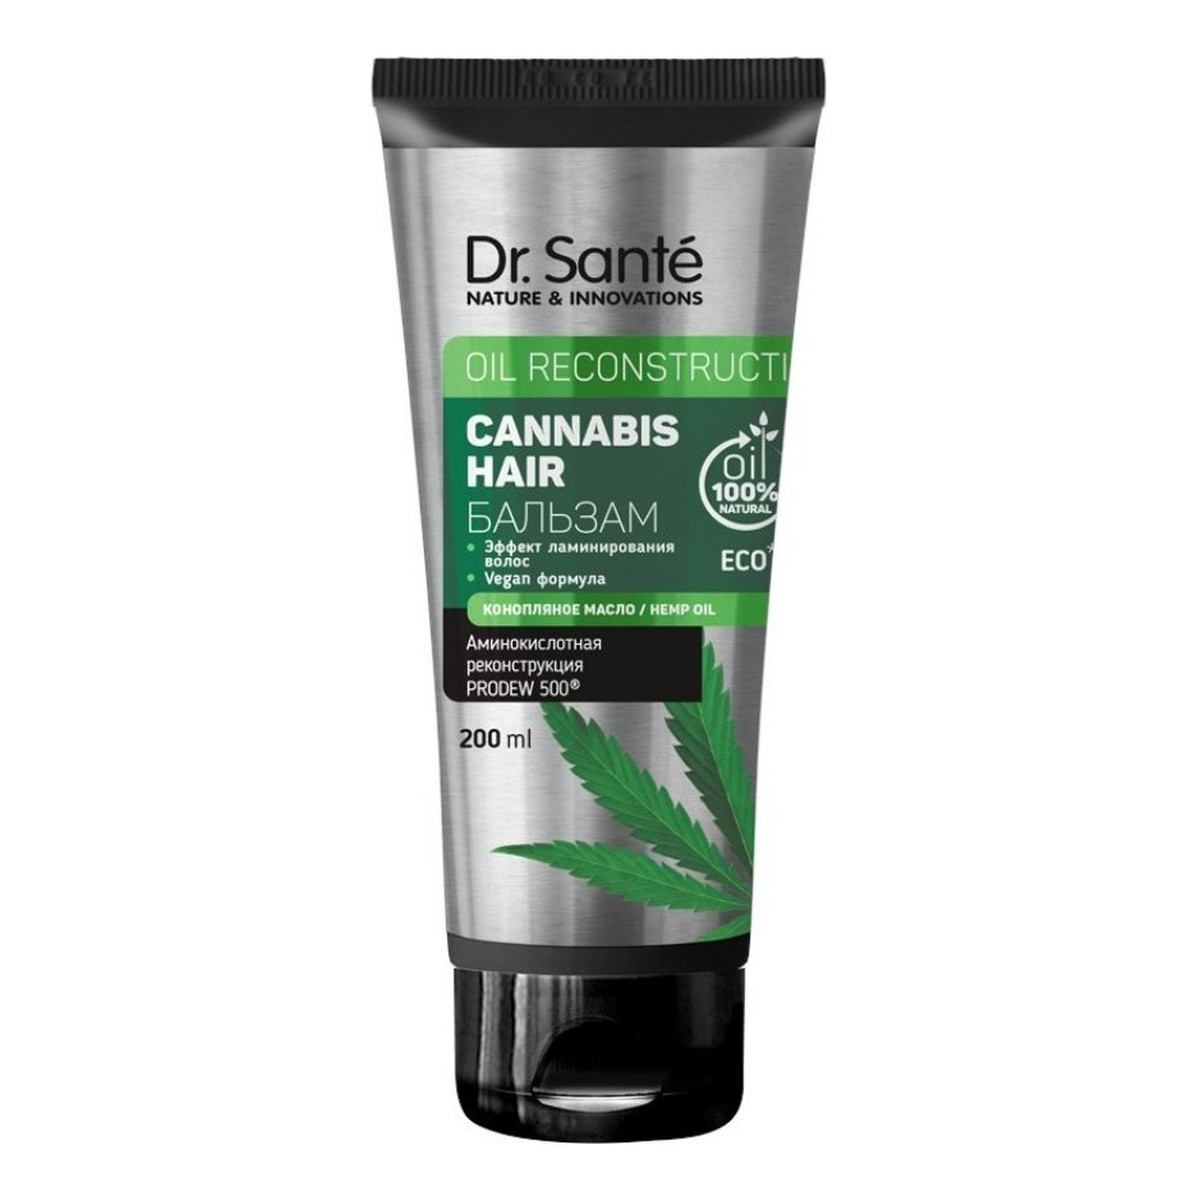 Dr. Sante Cannabis Hair Rewitalizująca odżywka do włosów 200ml